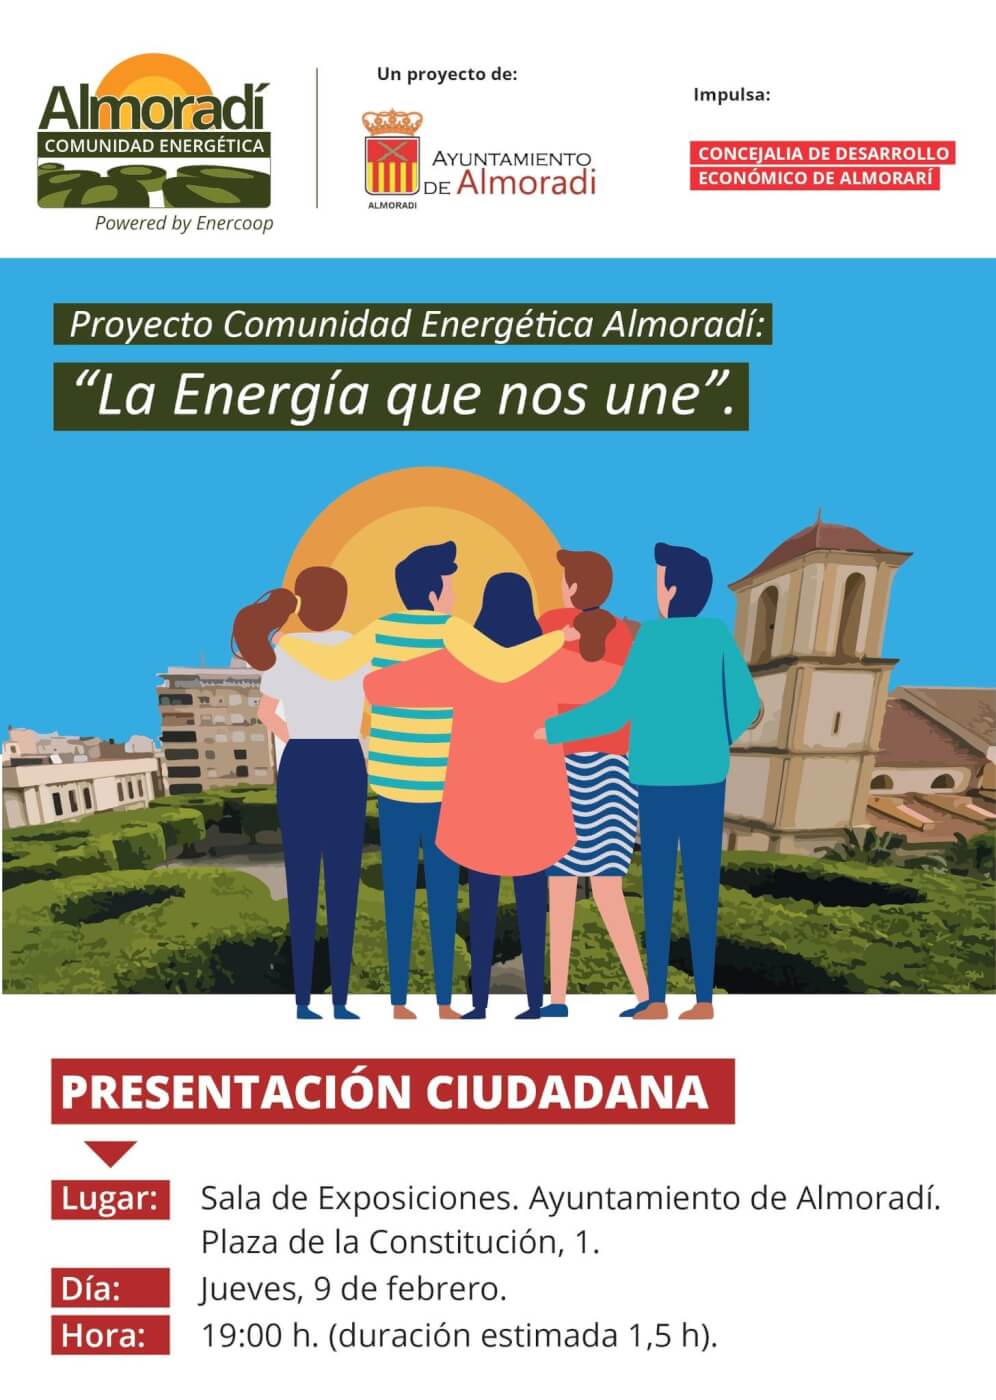 La Concejalía de desarrollo económico de Almoradí impulsa el autoconsumo colectivo a través de la creación de una comunidad energética local  